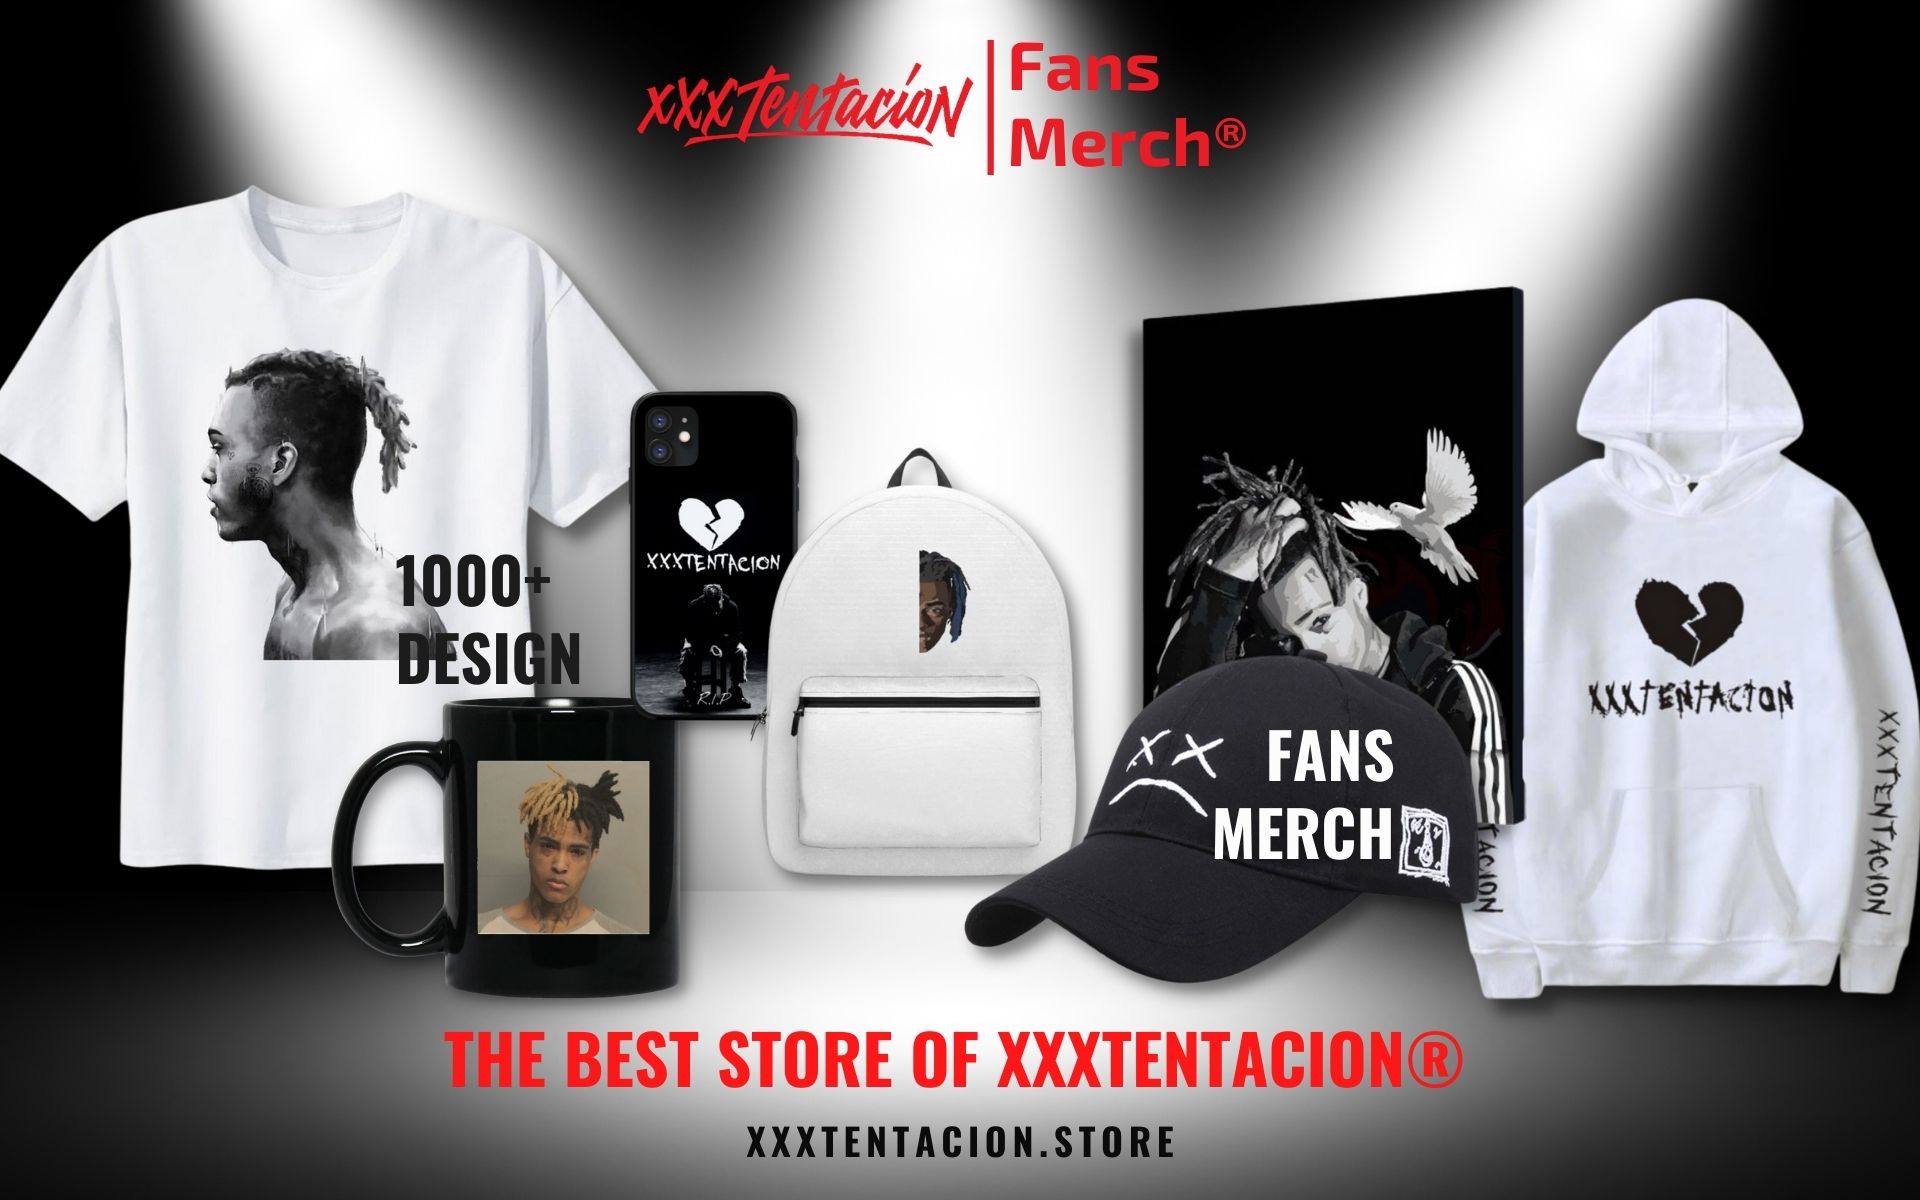 Xxxtentacion Merch Web Banner 1 - XXXtentacion Shop